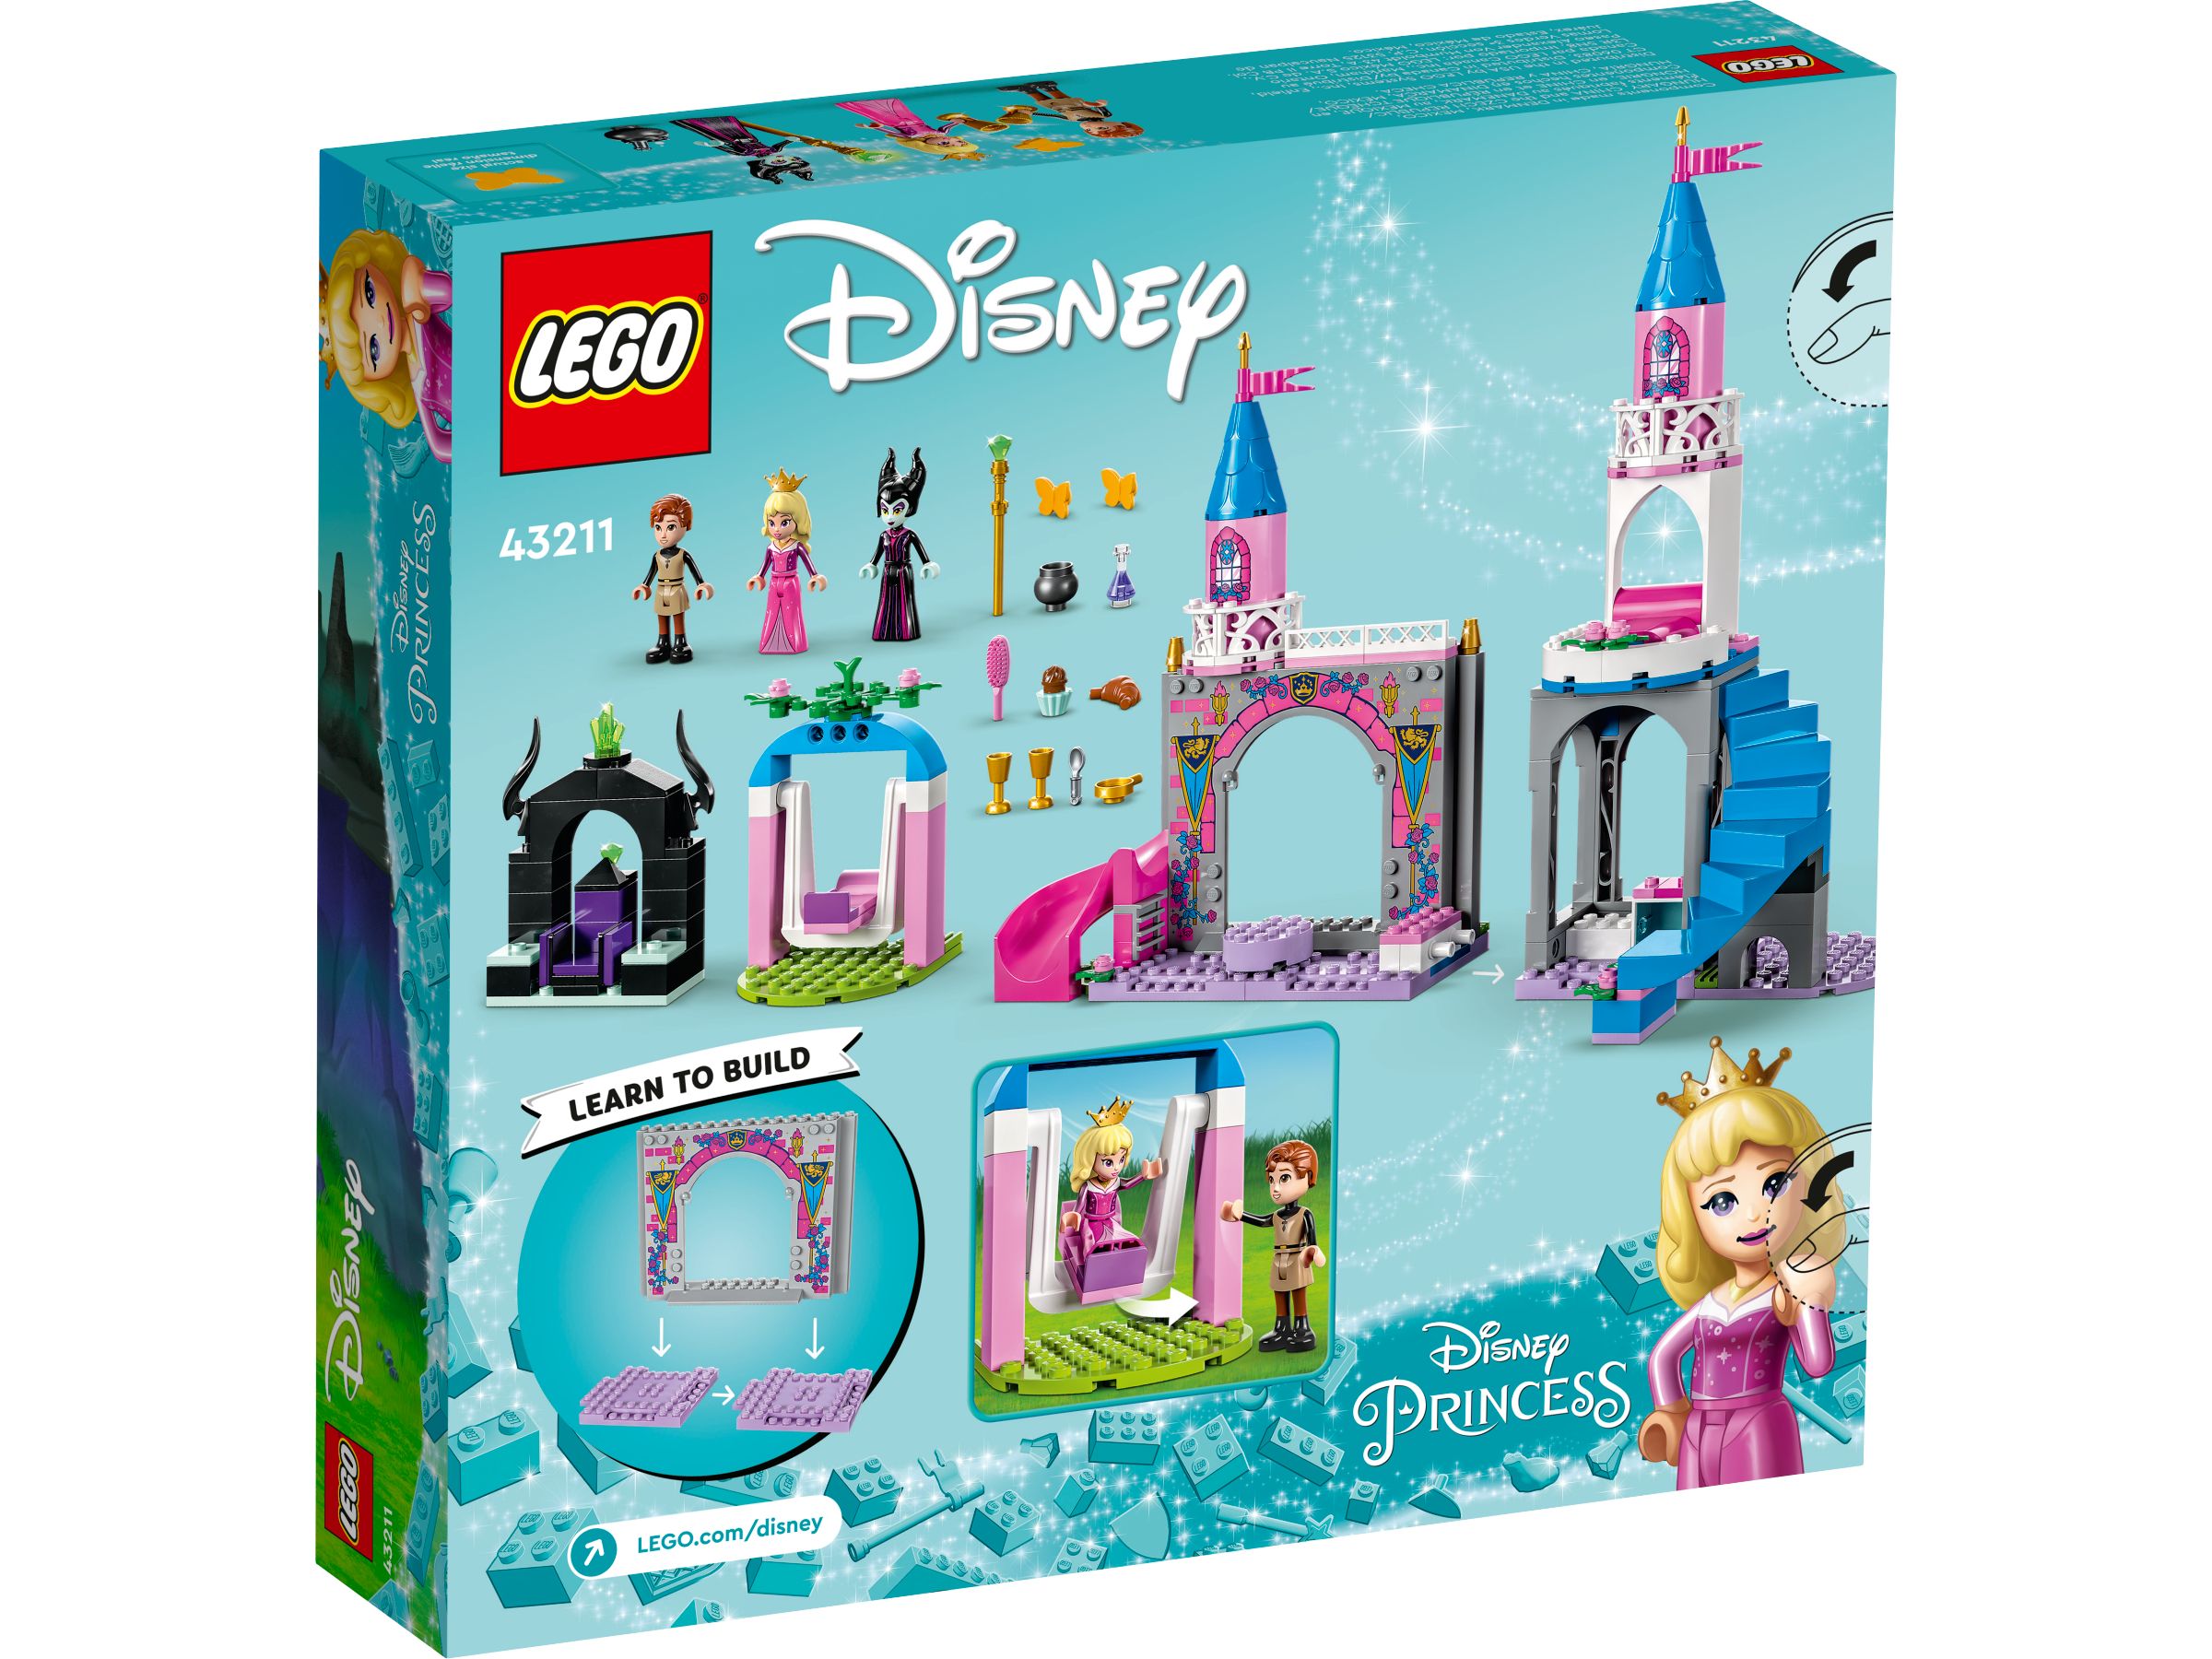 LEGO Disney 5008115 Prinzessinnen-Paket LEGO_43211_alt6.jpg